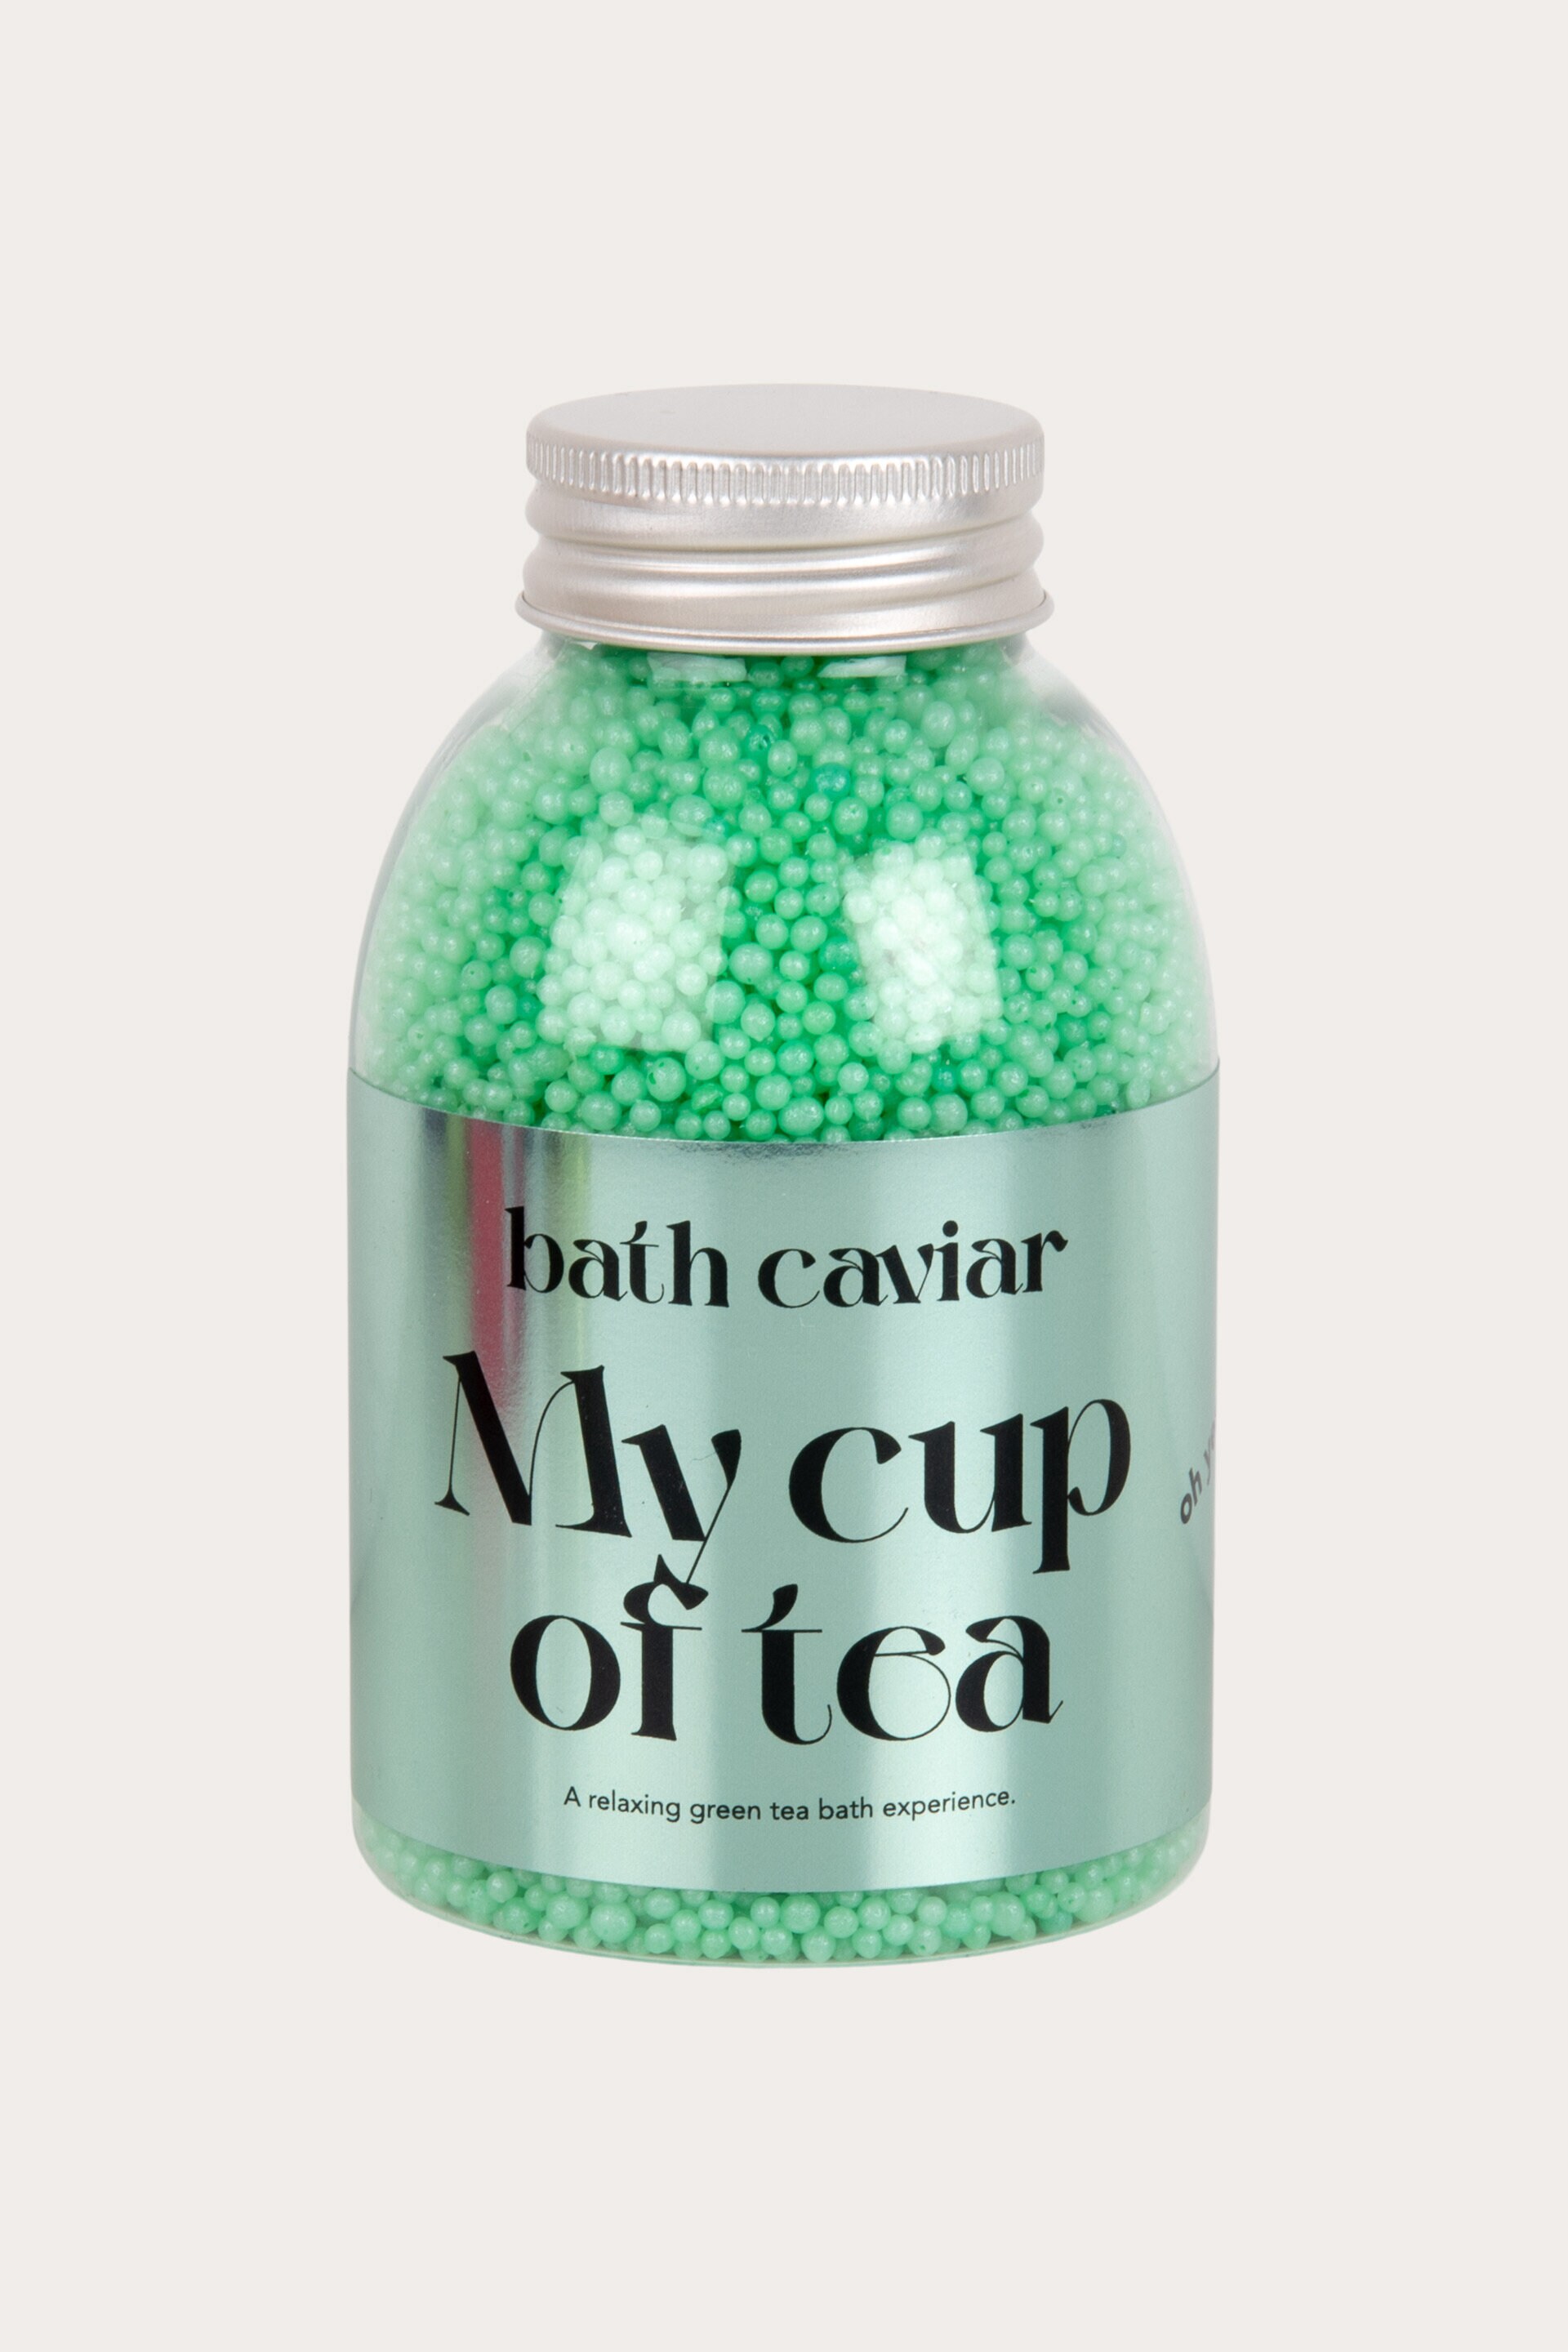 Bath caviar MY CUP OF TEA 